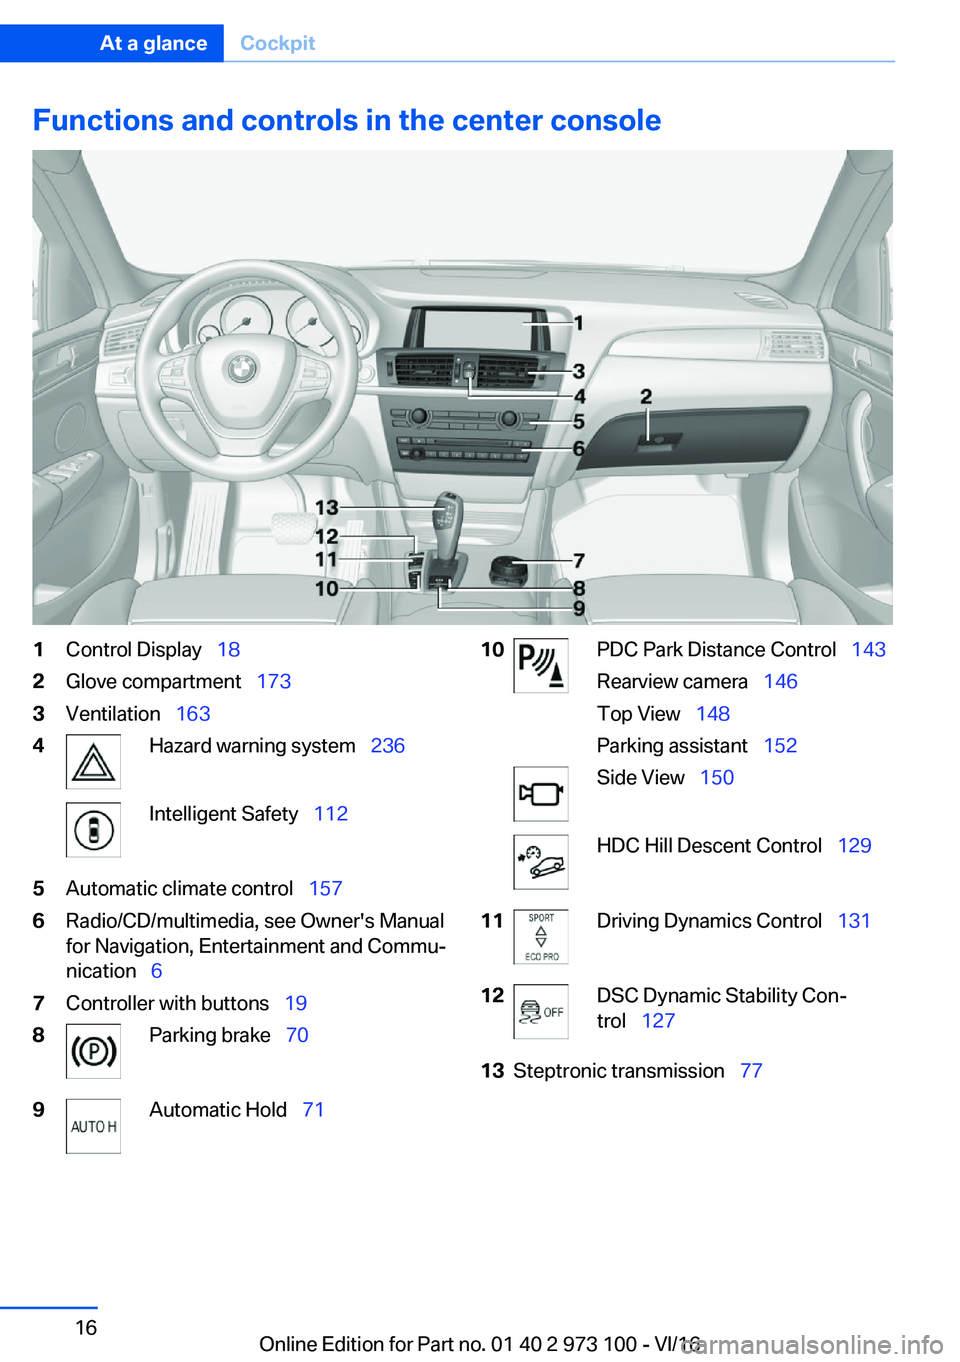 BMW X4 2017 User Guide �F�u�n�c�t�i�o�n�s��a�n�d��c�o�n�t�r�o�l�s��i�n��t�h�e��c�e�n�t�e�r��c�o�n�s�o�l�e�1�C�o�n�t�r�o�l� �D�i�s�p�l�a�y\_�1�8�2�G�l�o�v�e� �c�o�m�p�a�r�t�m�e�n�t\_ �1�7�3�3�V�e�n�t�i�l�a�t�i�o�n